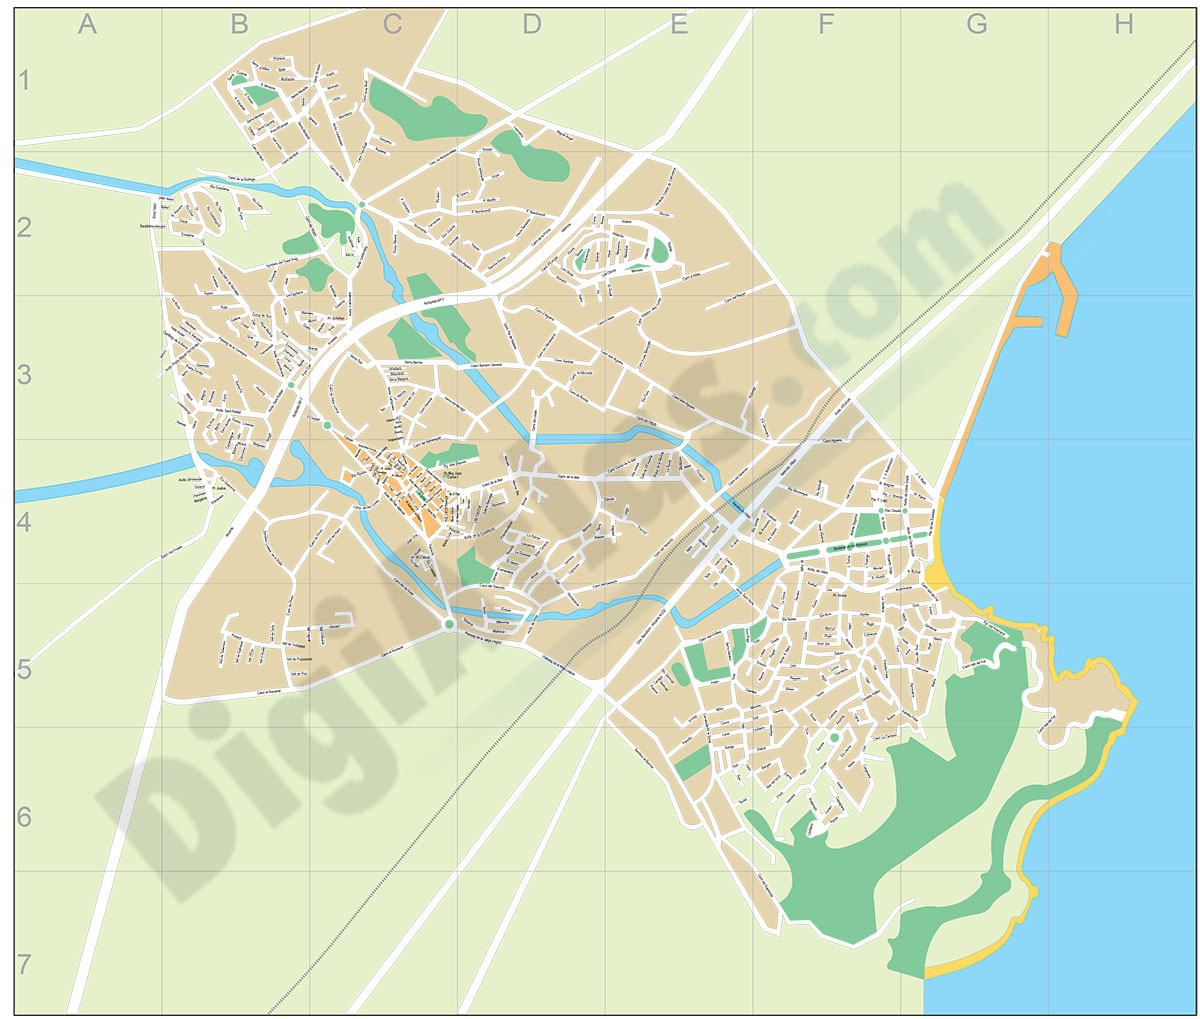 Alfàs del Pi (province of Alicante) - city map